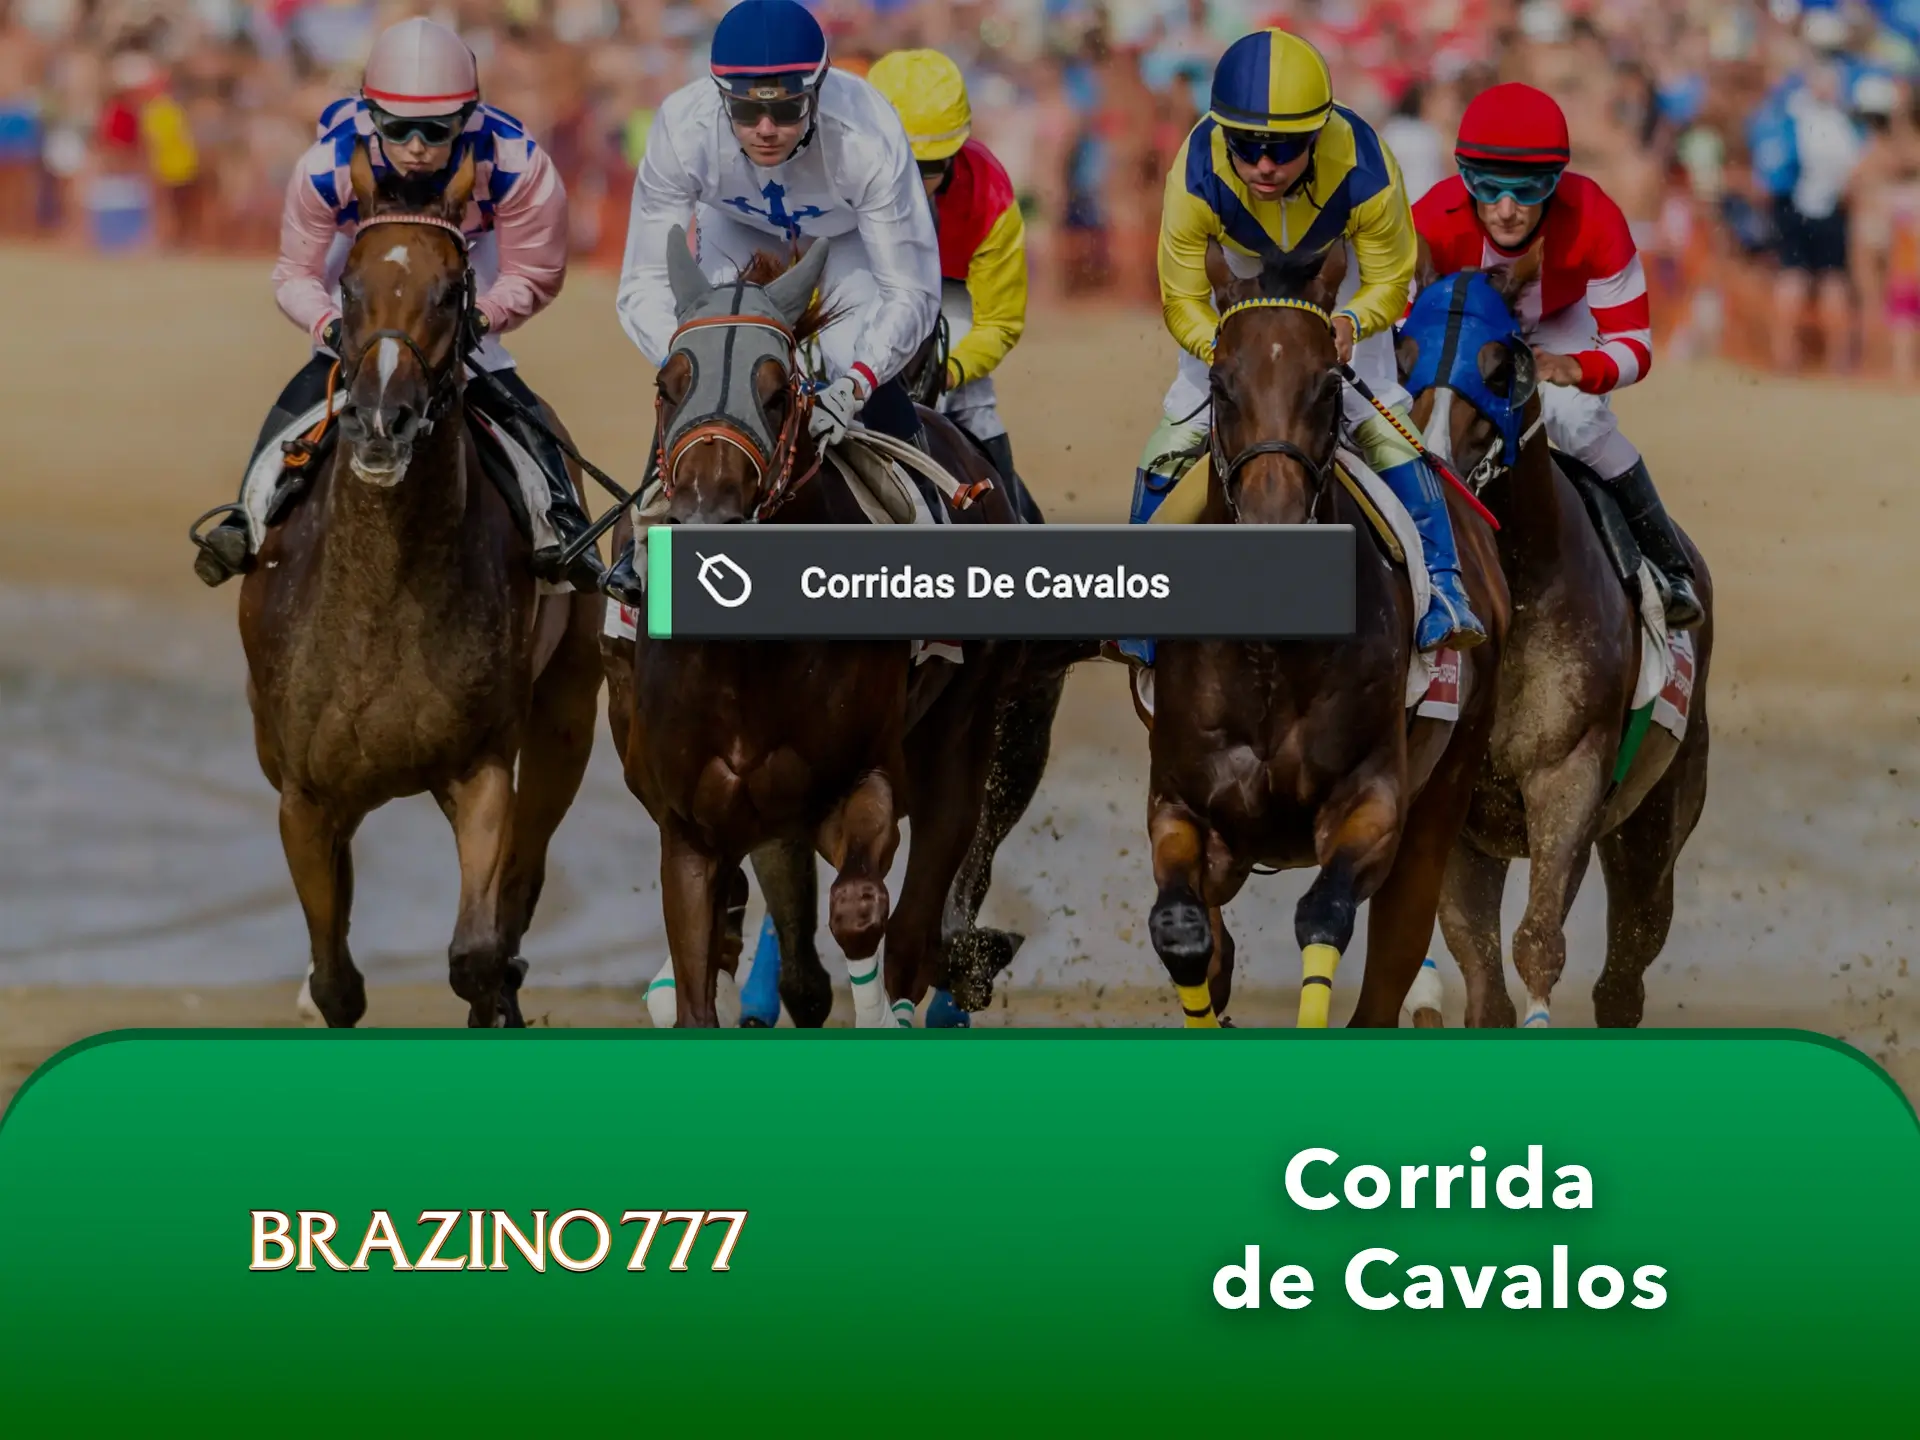 Veja as corridas de cavalos em direto no Brazino777 e faça as suas previsões.